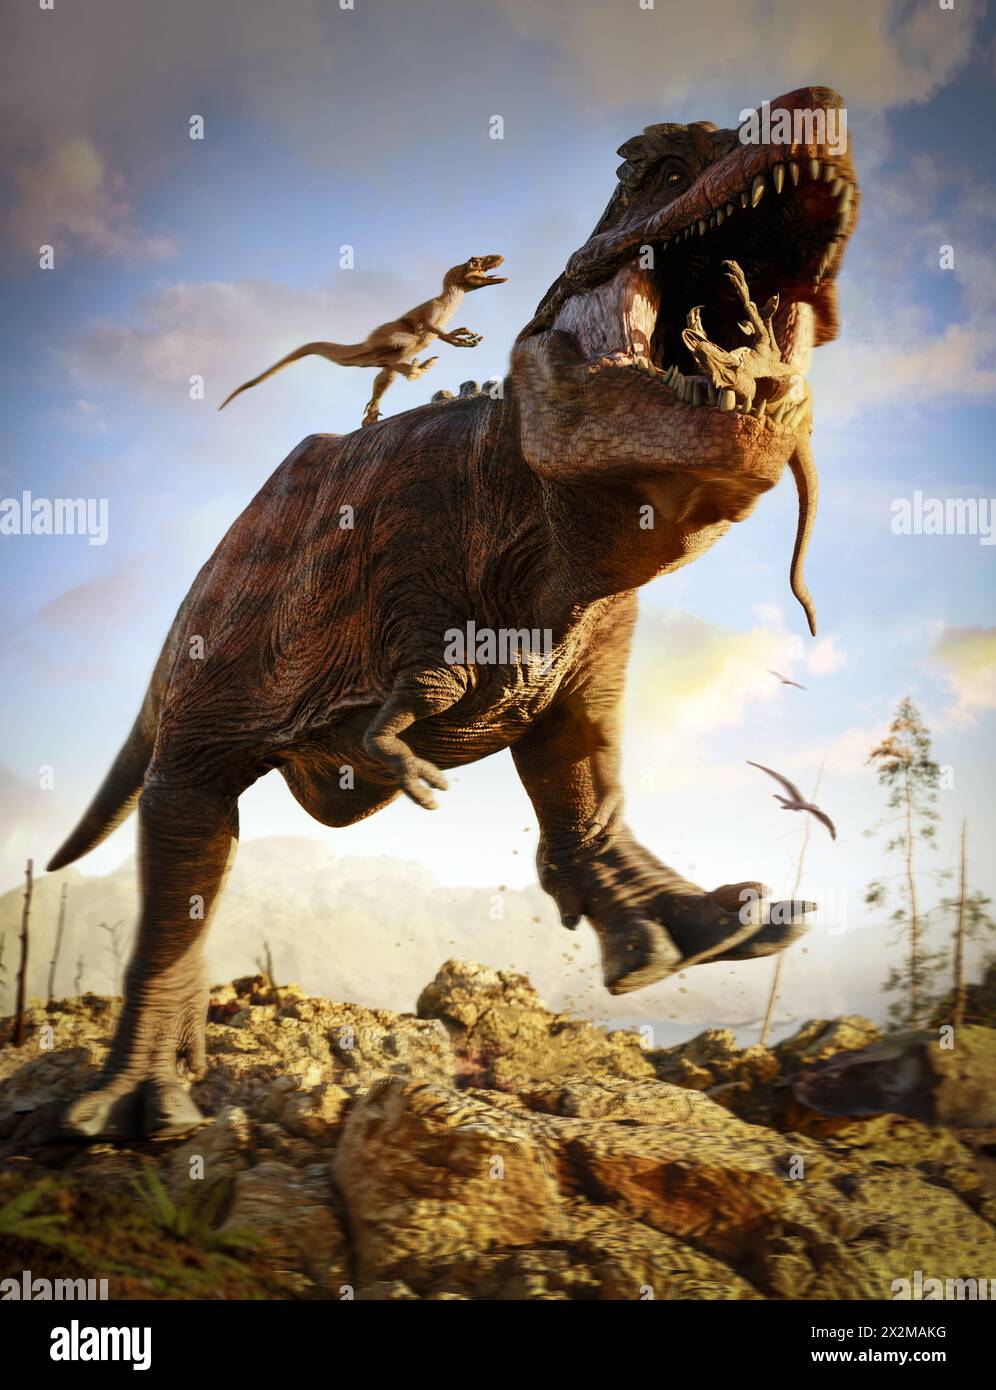 Jurrasic-Szene - Trex-Dinosaurier wird angegriffen, 3D-Illustration Stockfoto